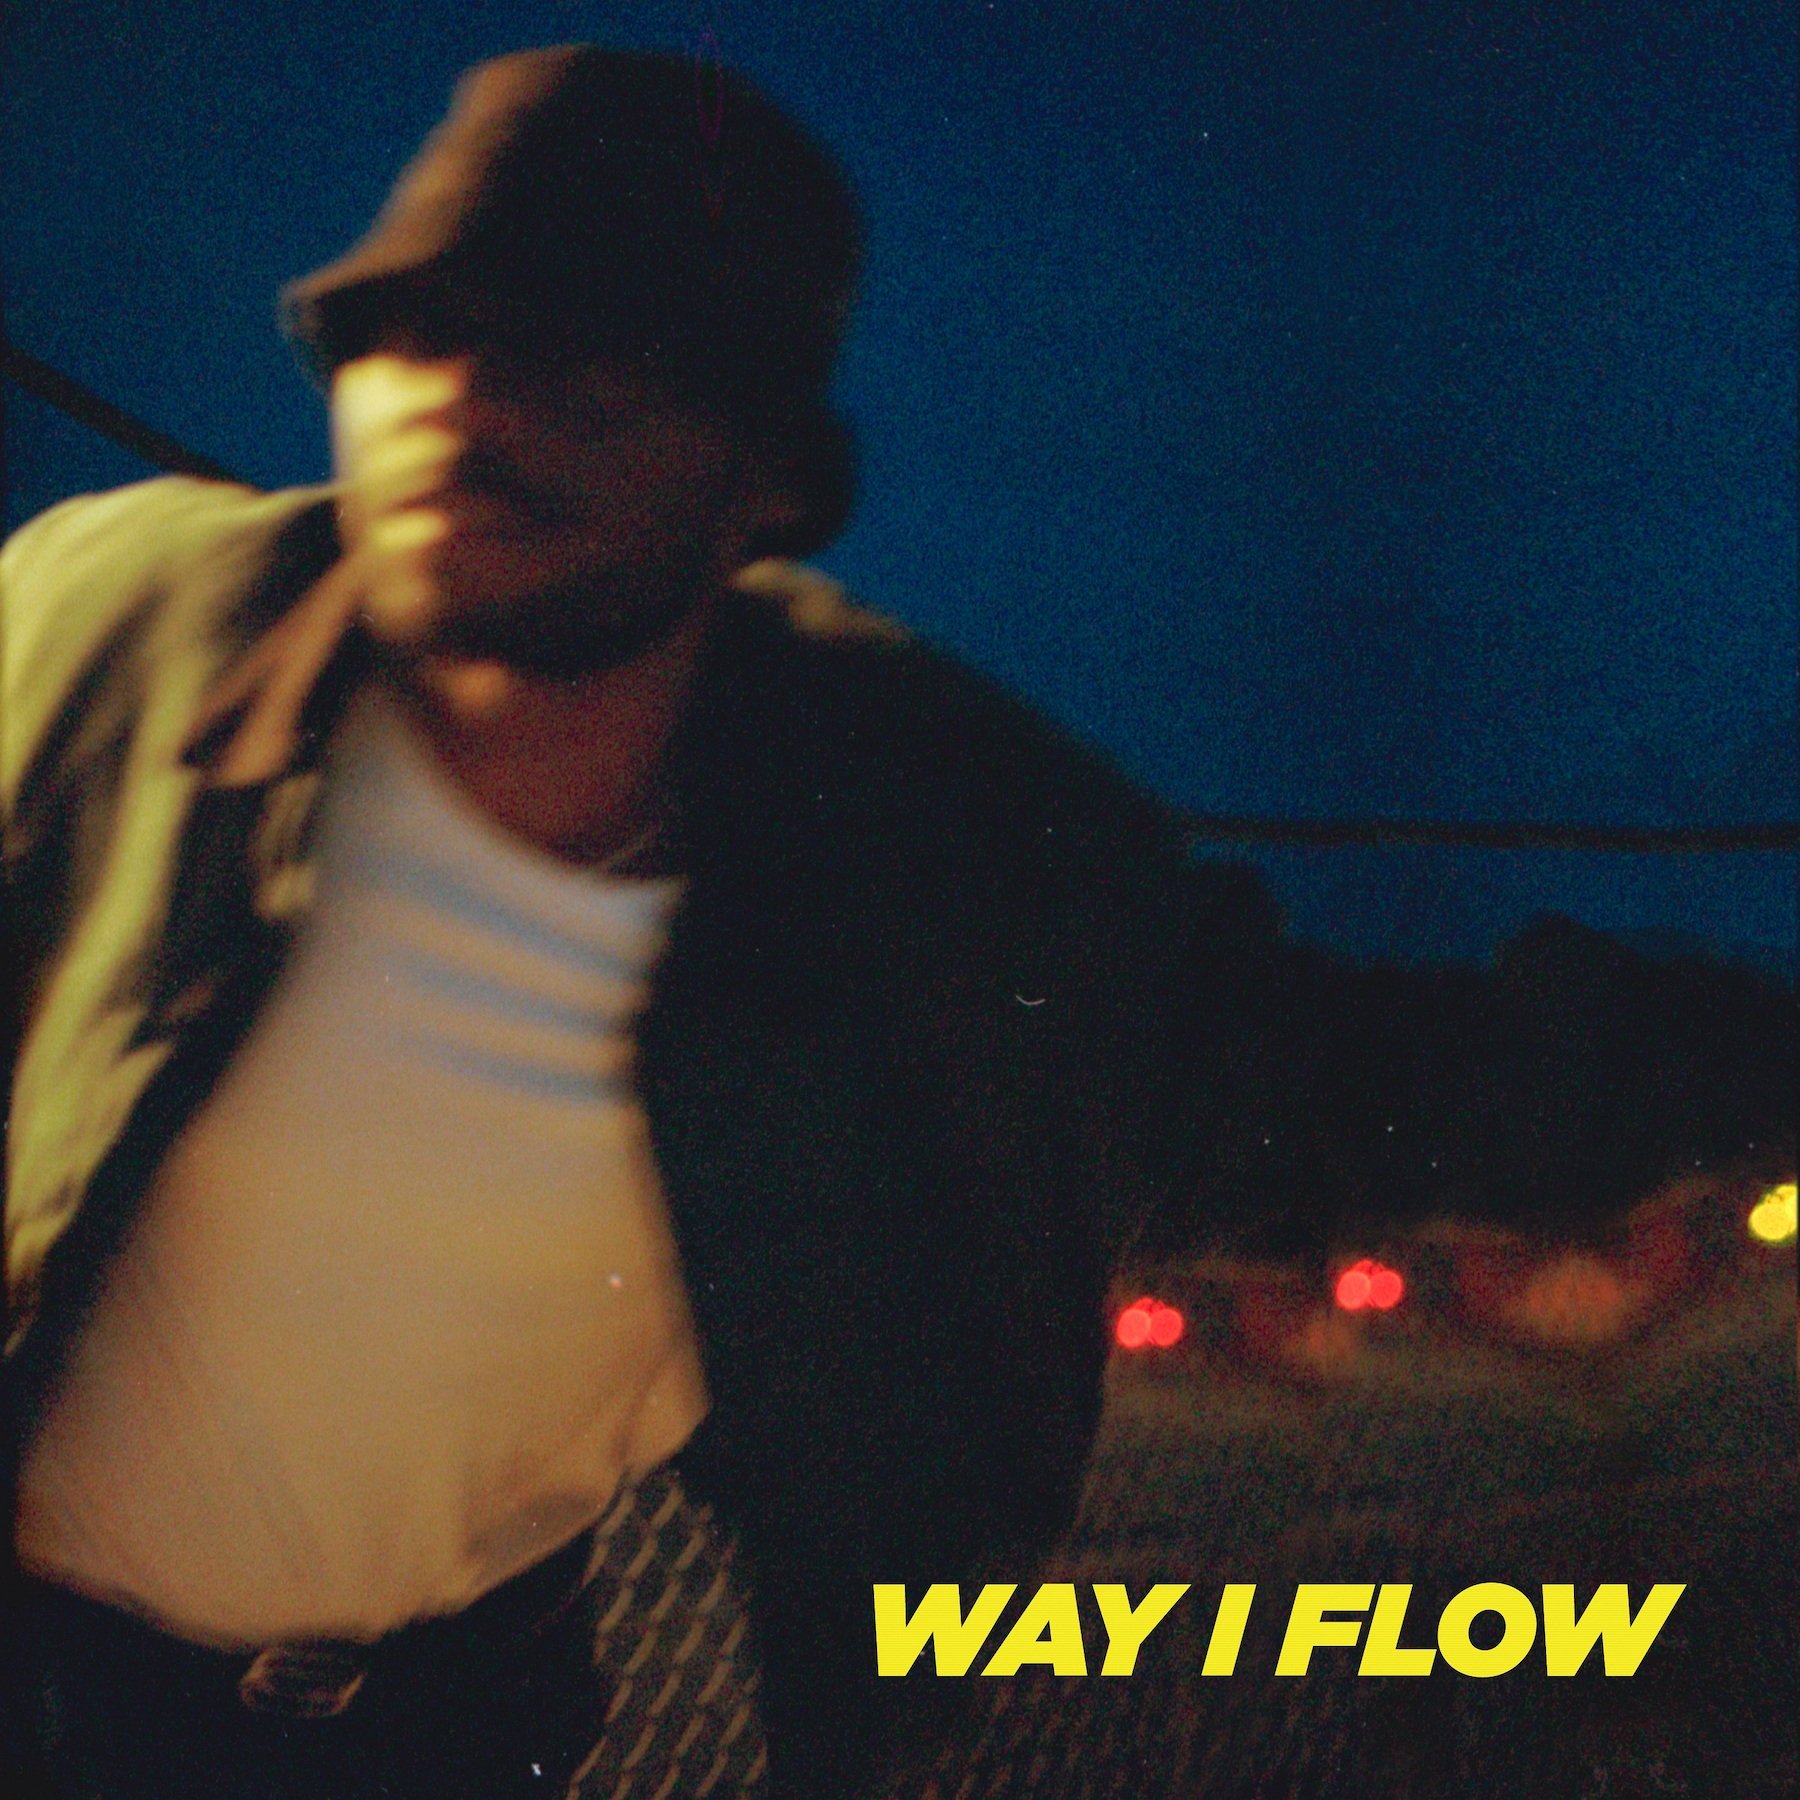 Way I Flow by BOYFRN